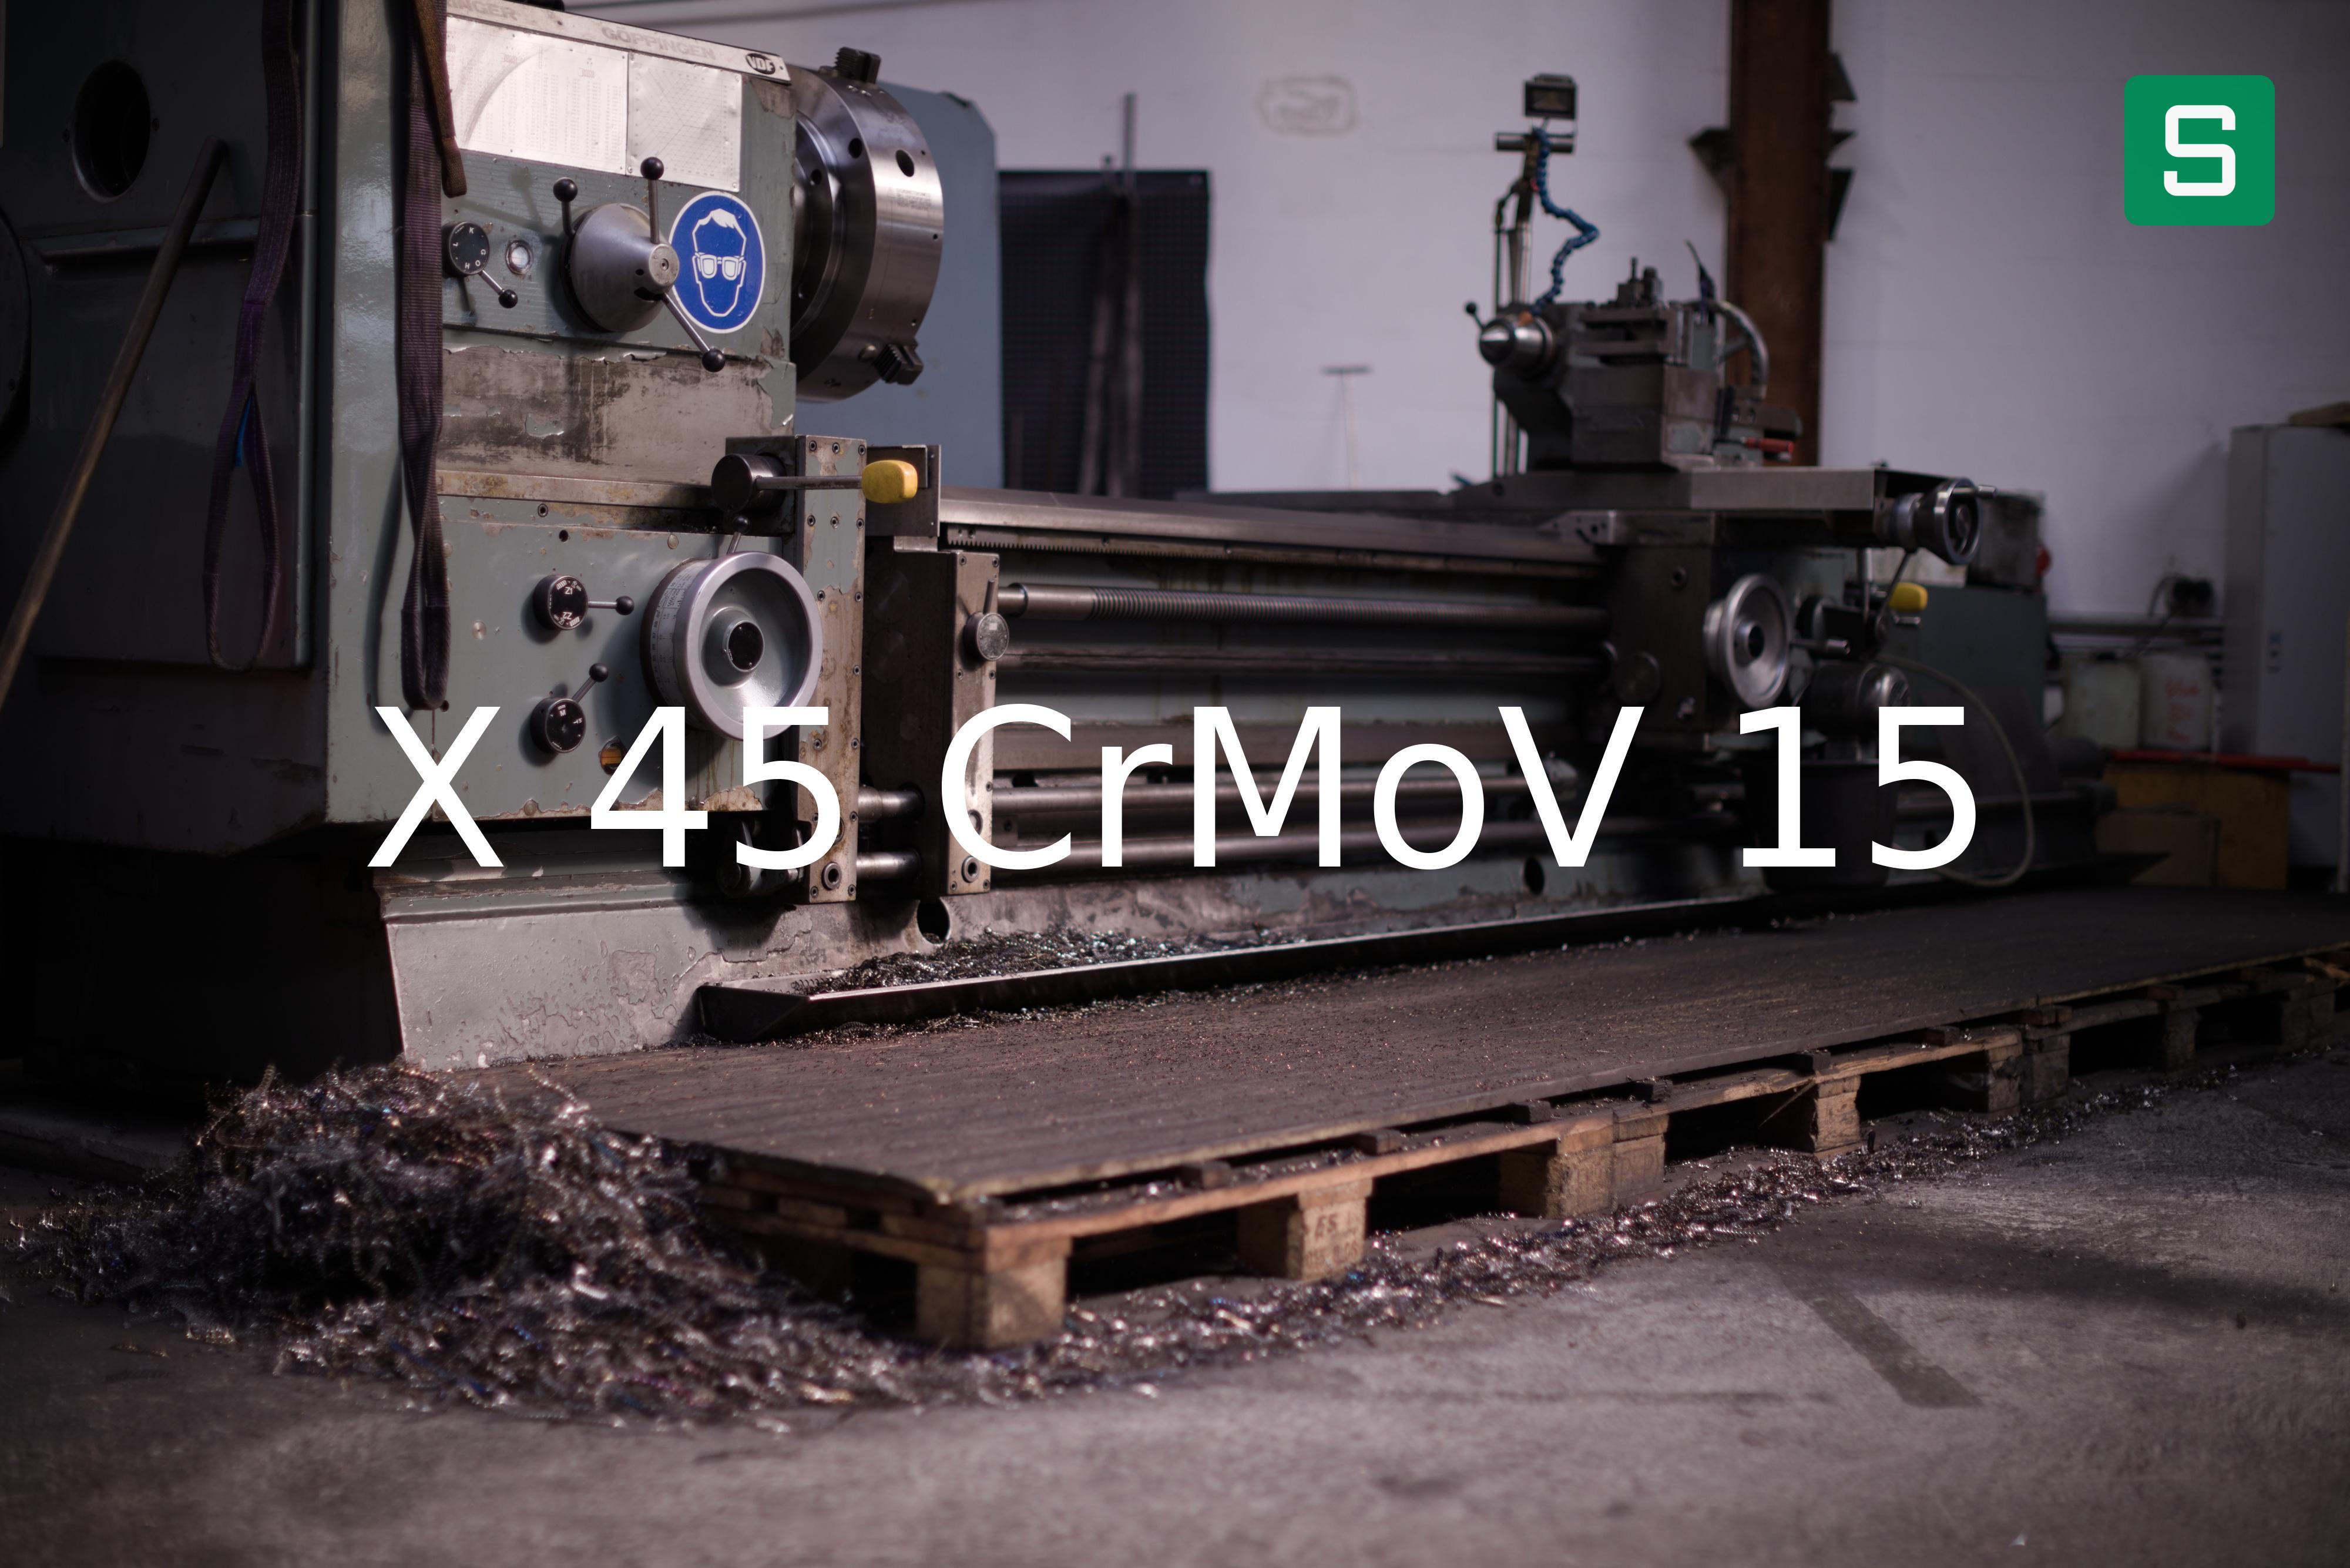 Steel Material: X 45 CrMoV 15